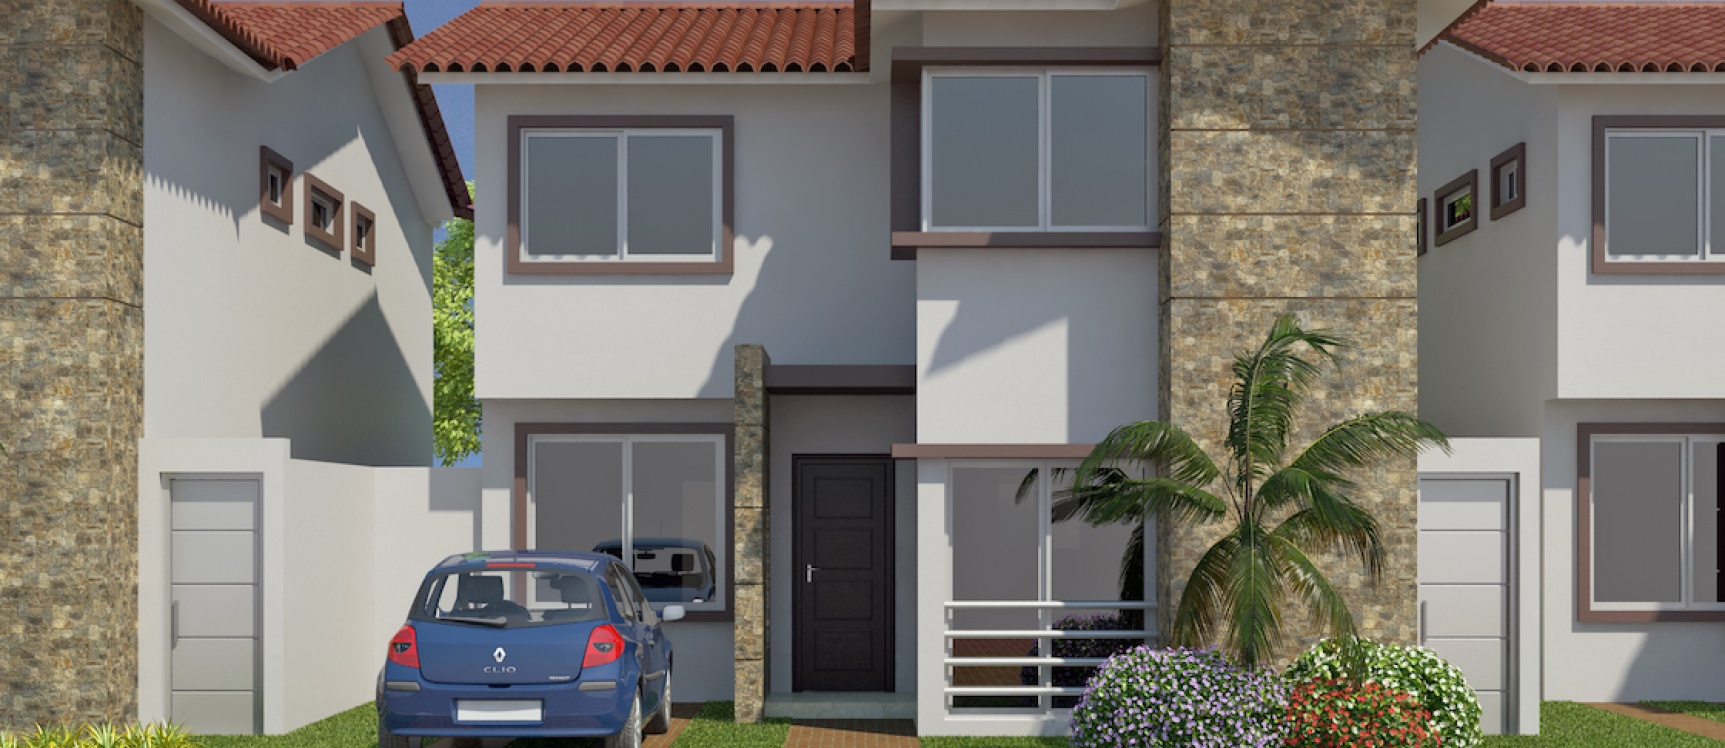 GeoBienes - Modelo F casa en venta con 4 dormitorios en Costa Real - Plusvalia Guayaquil Casas de venta y alquiler Inmobiliaria Ecuador